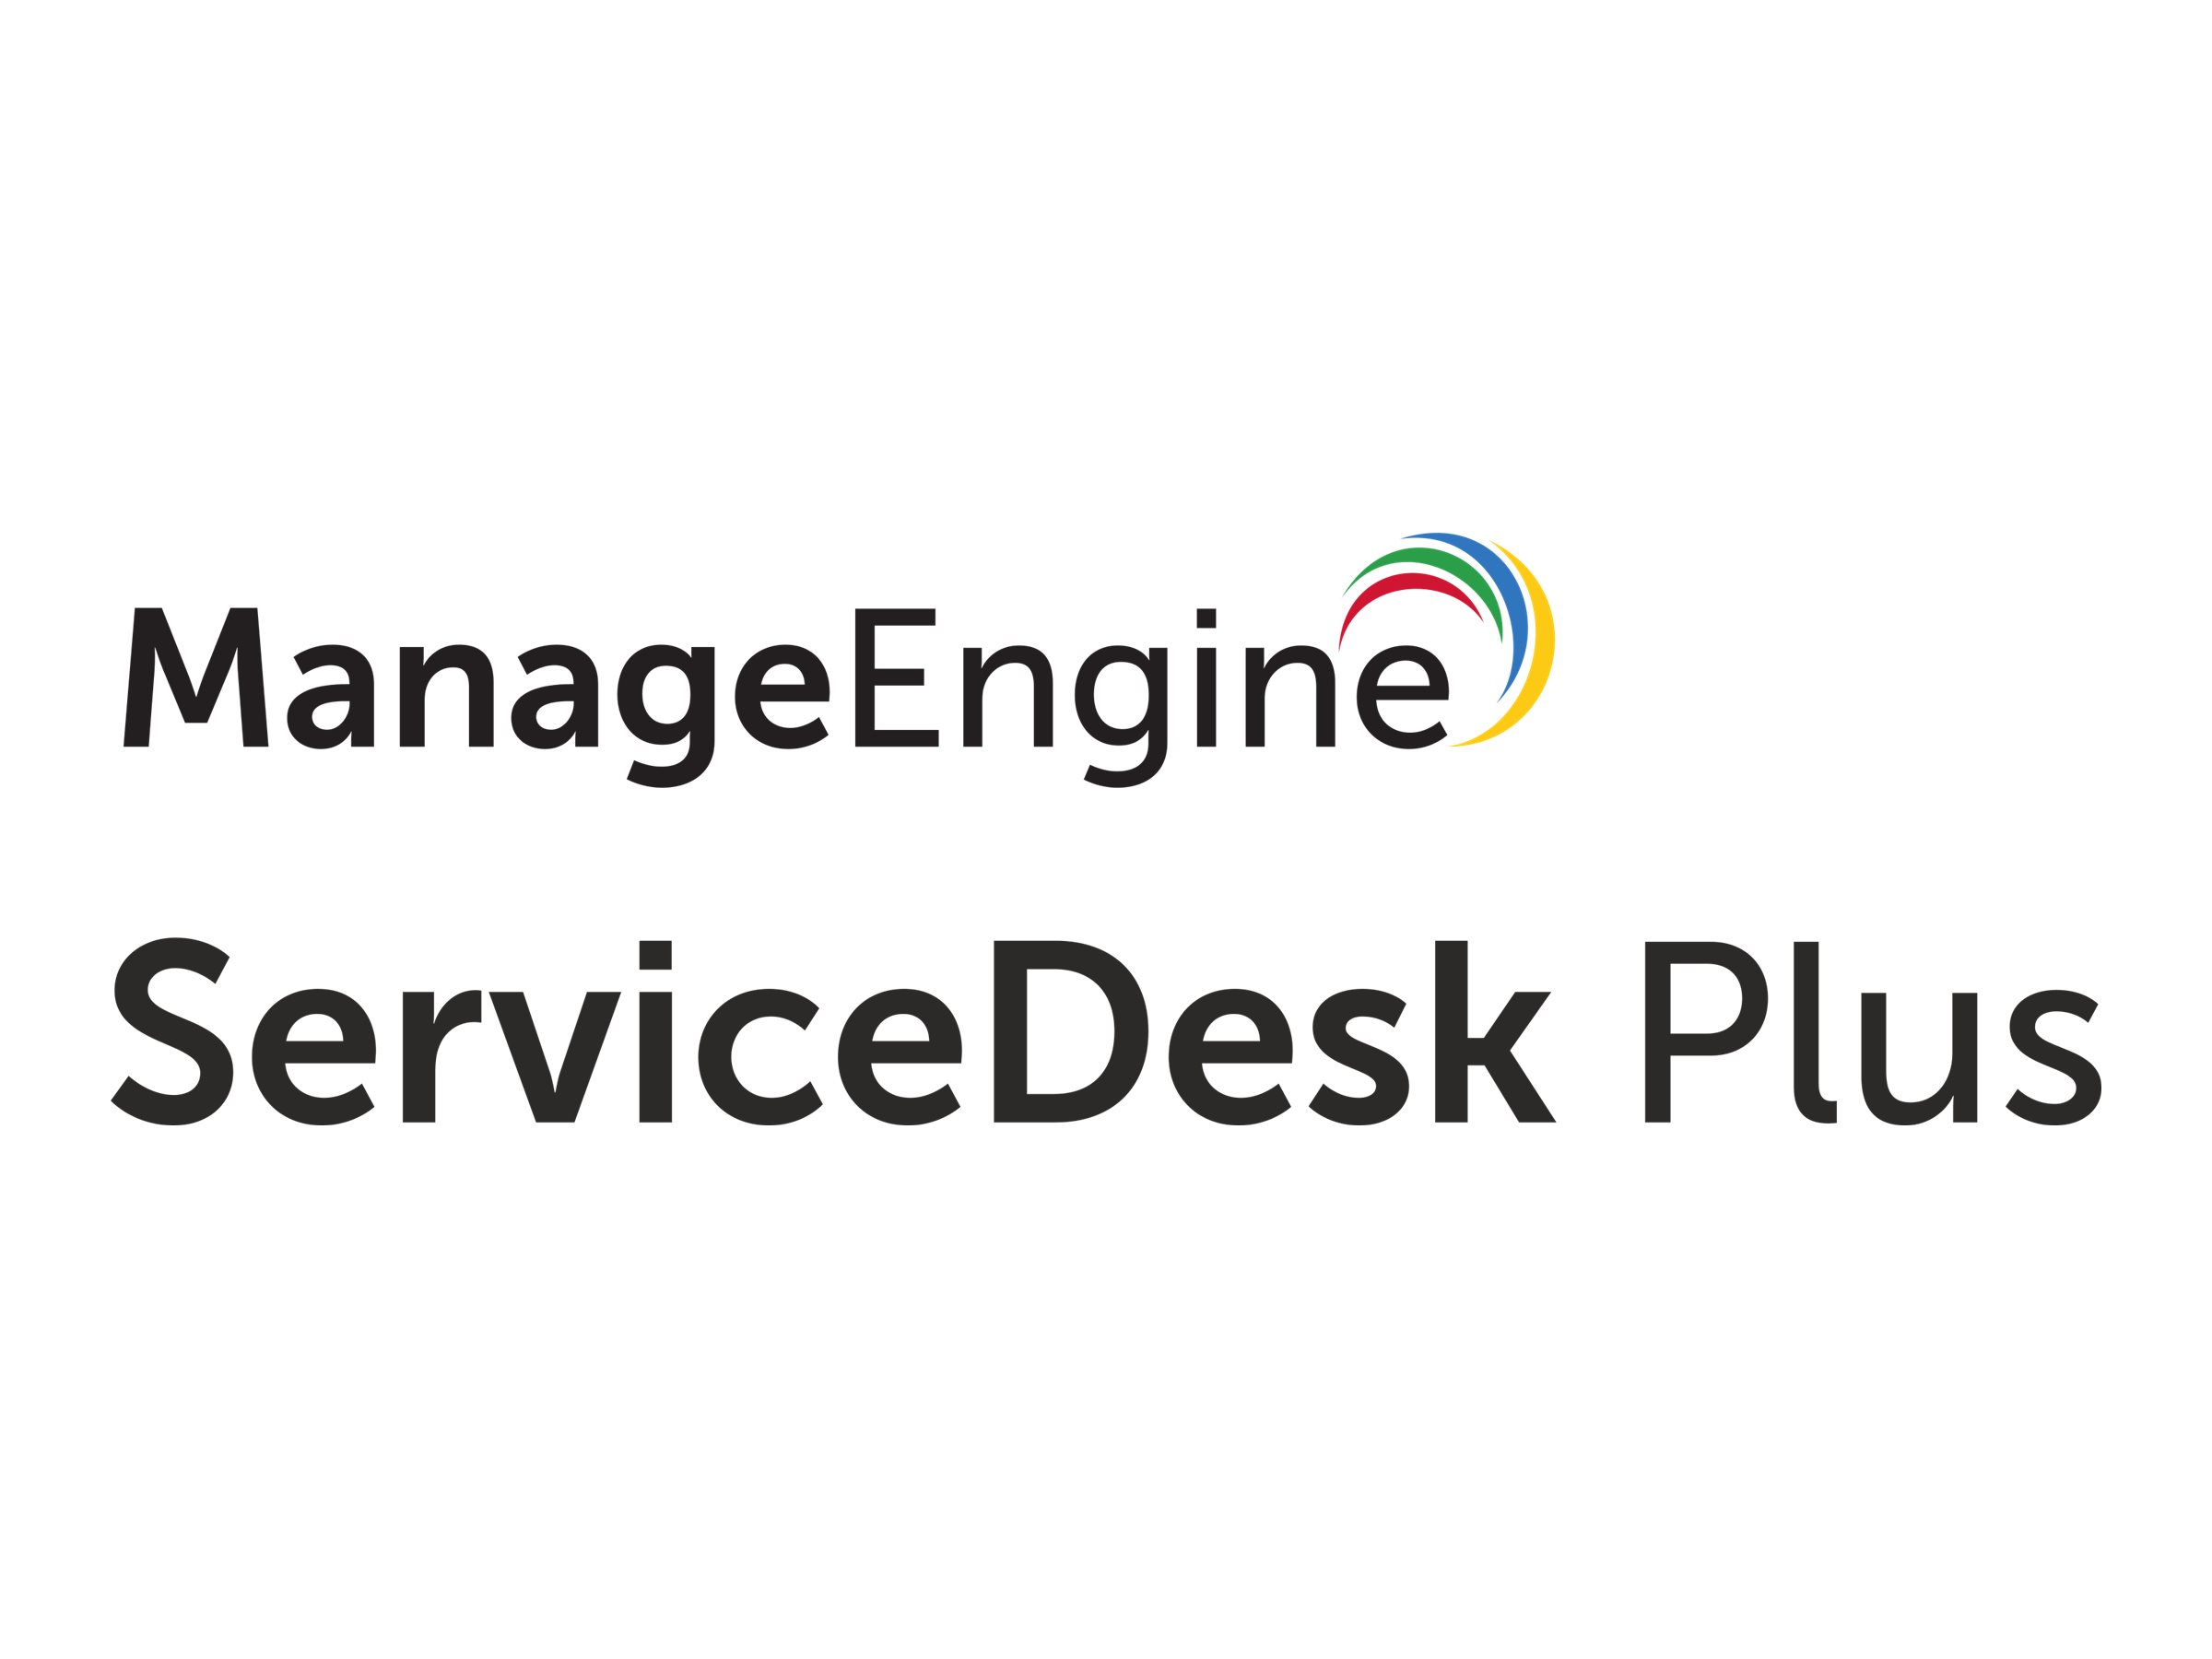 ManageEngine ServiceDesk Plus Enterprise Edition | www.shi.com